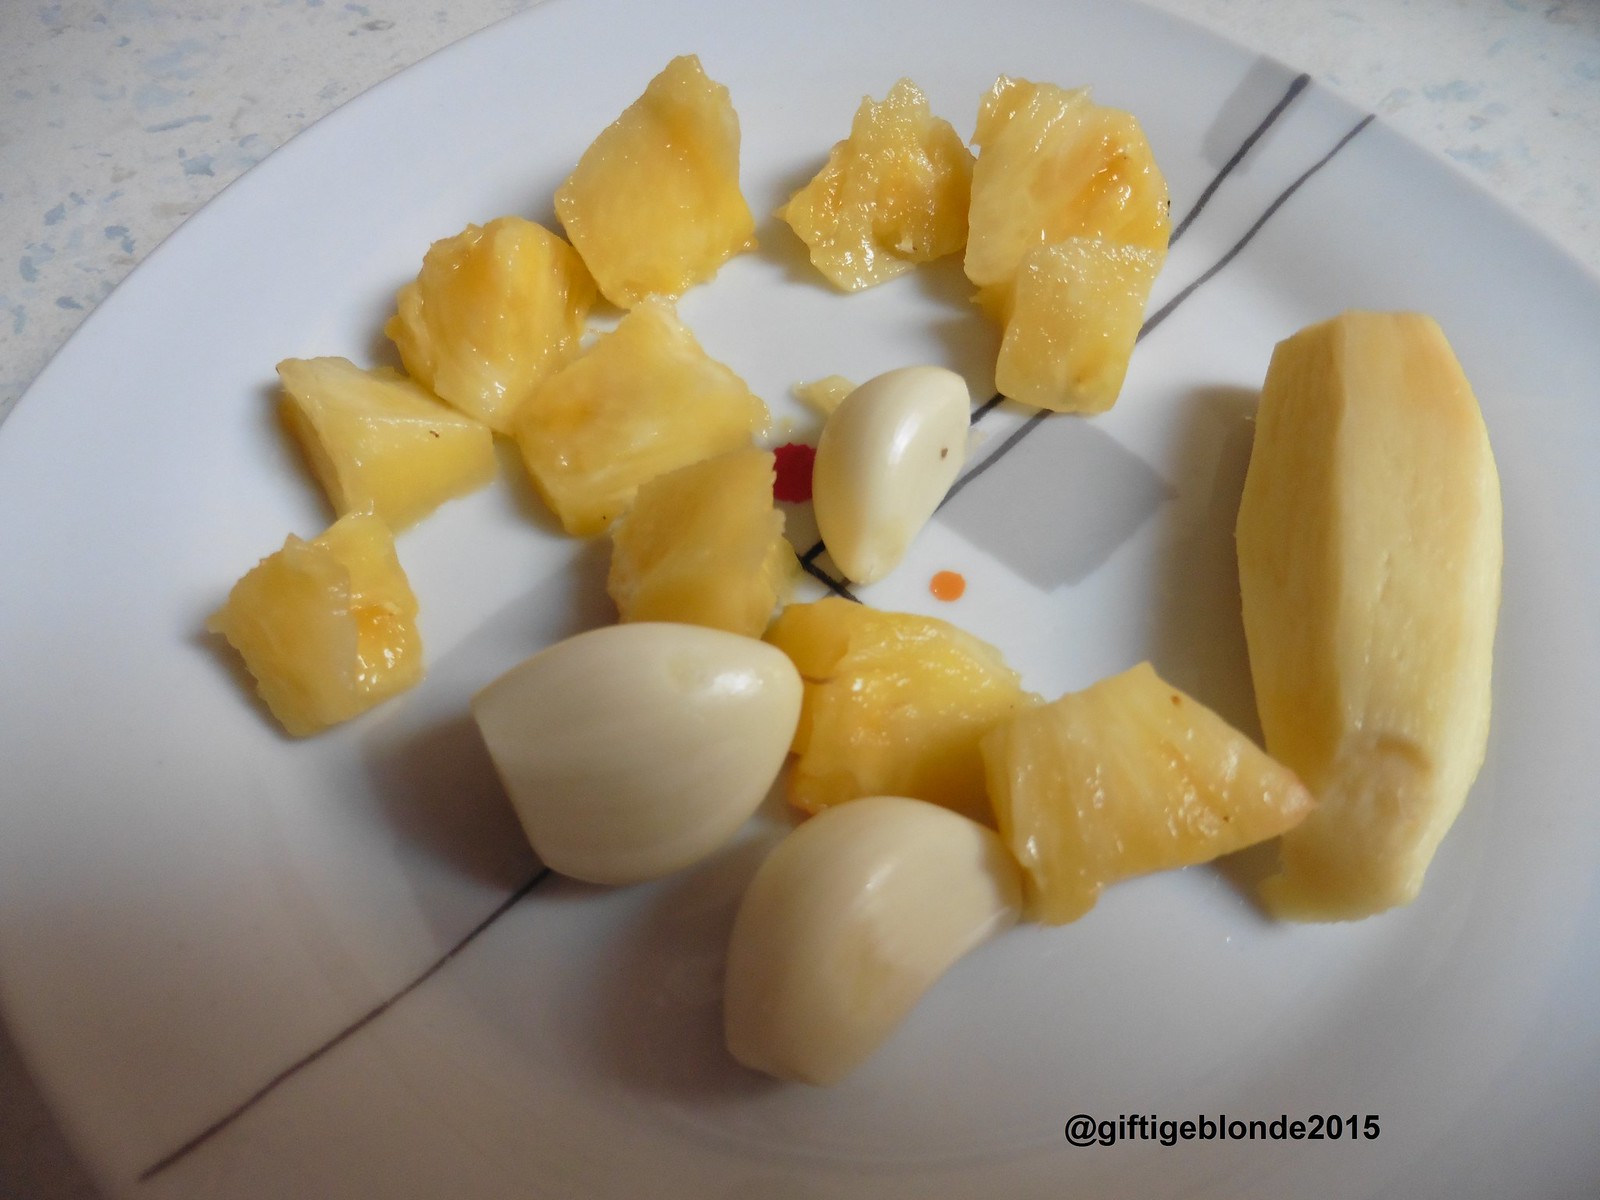 Ingwer, frische Ananas und Knoblauch für die Marinade